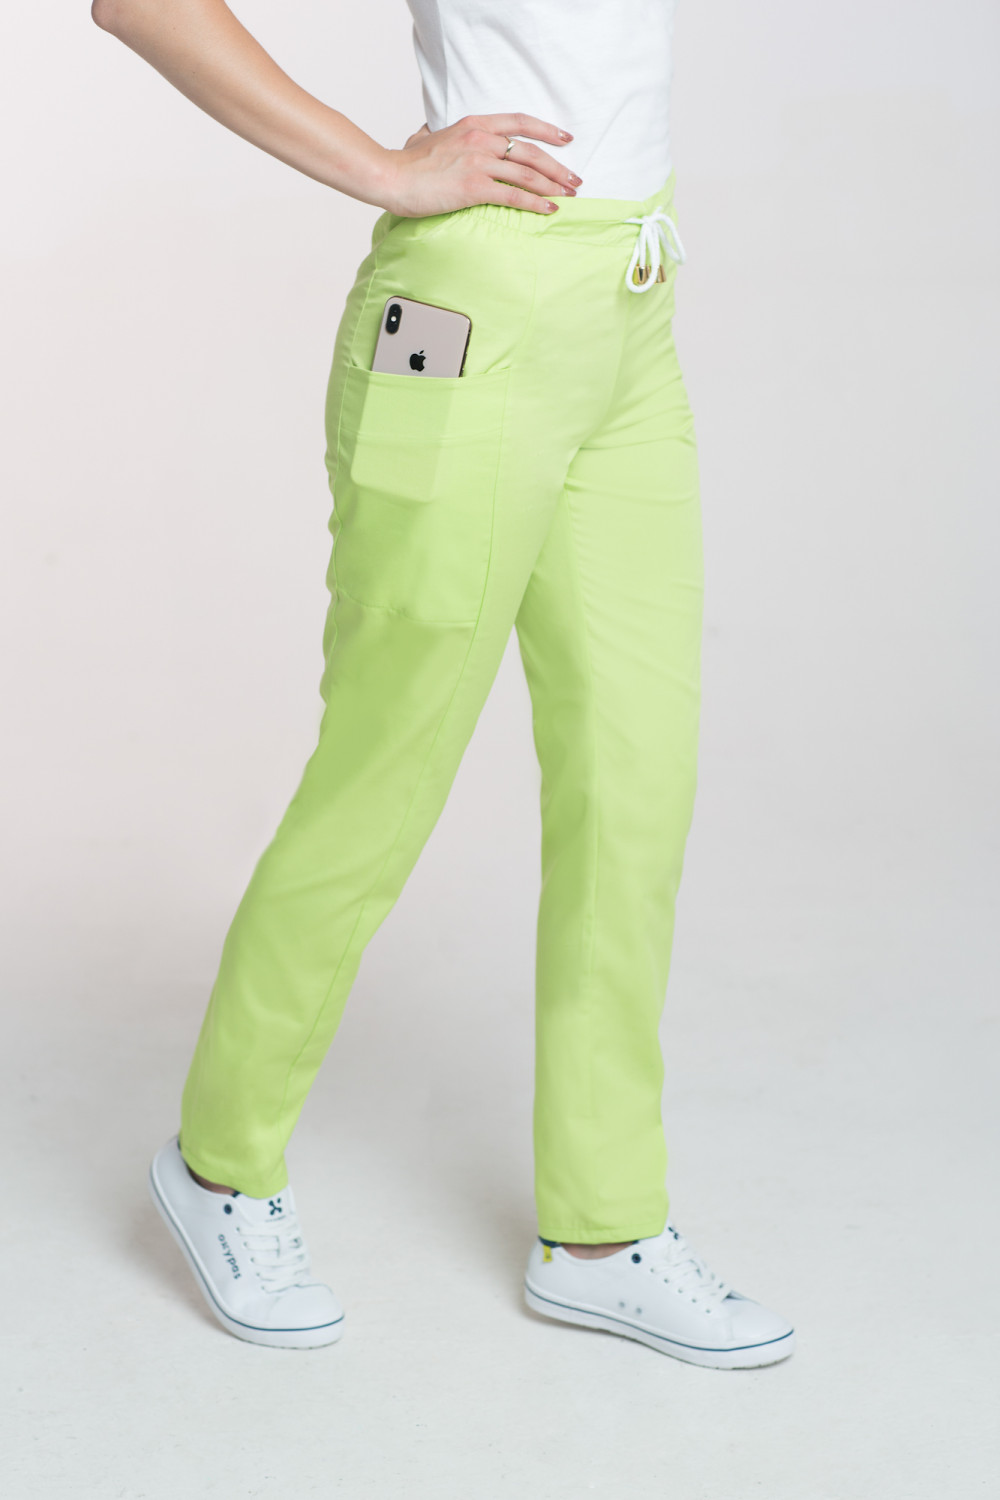 M-200X Elastyczne spodnie damskie medyczne kosmetyczne na sznurku limonka